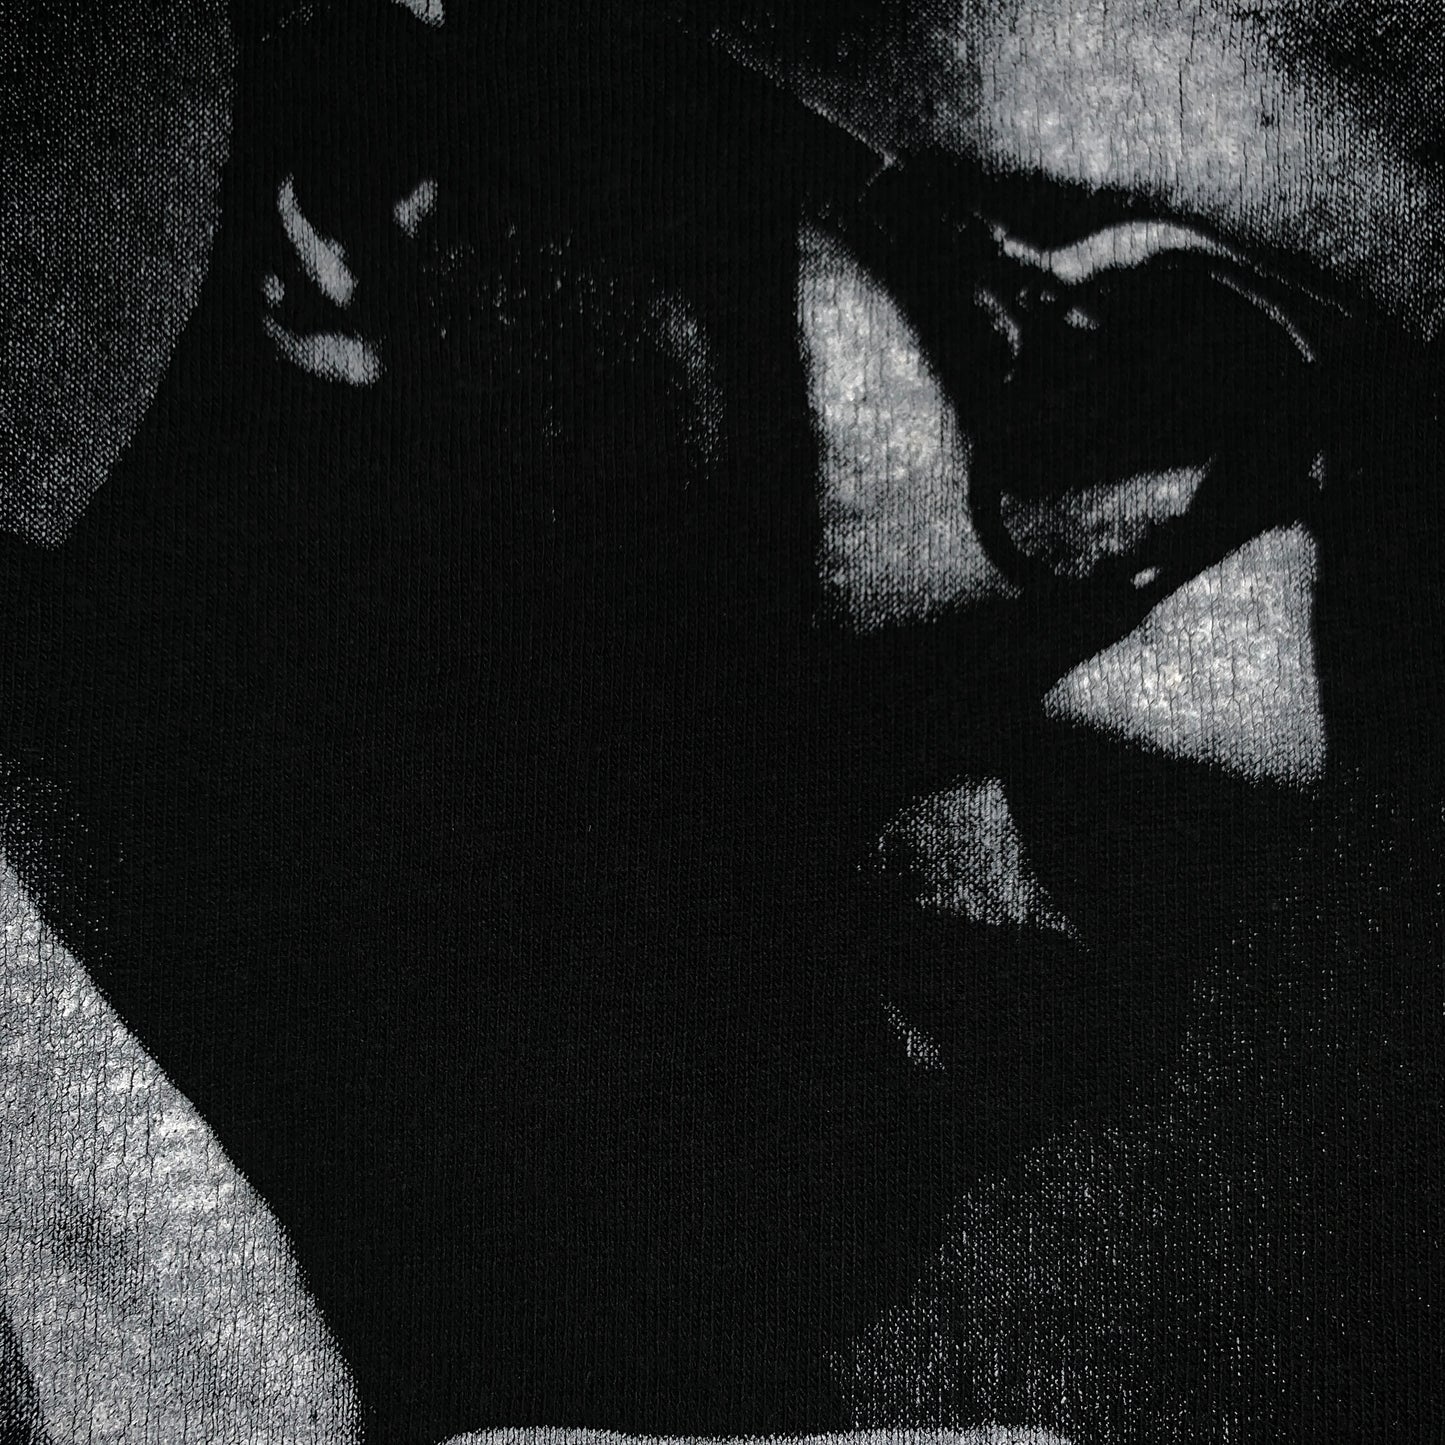 1990 Thelonious Monk "Promo" Shirt - XL